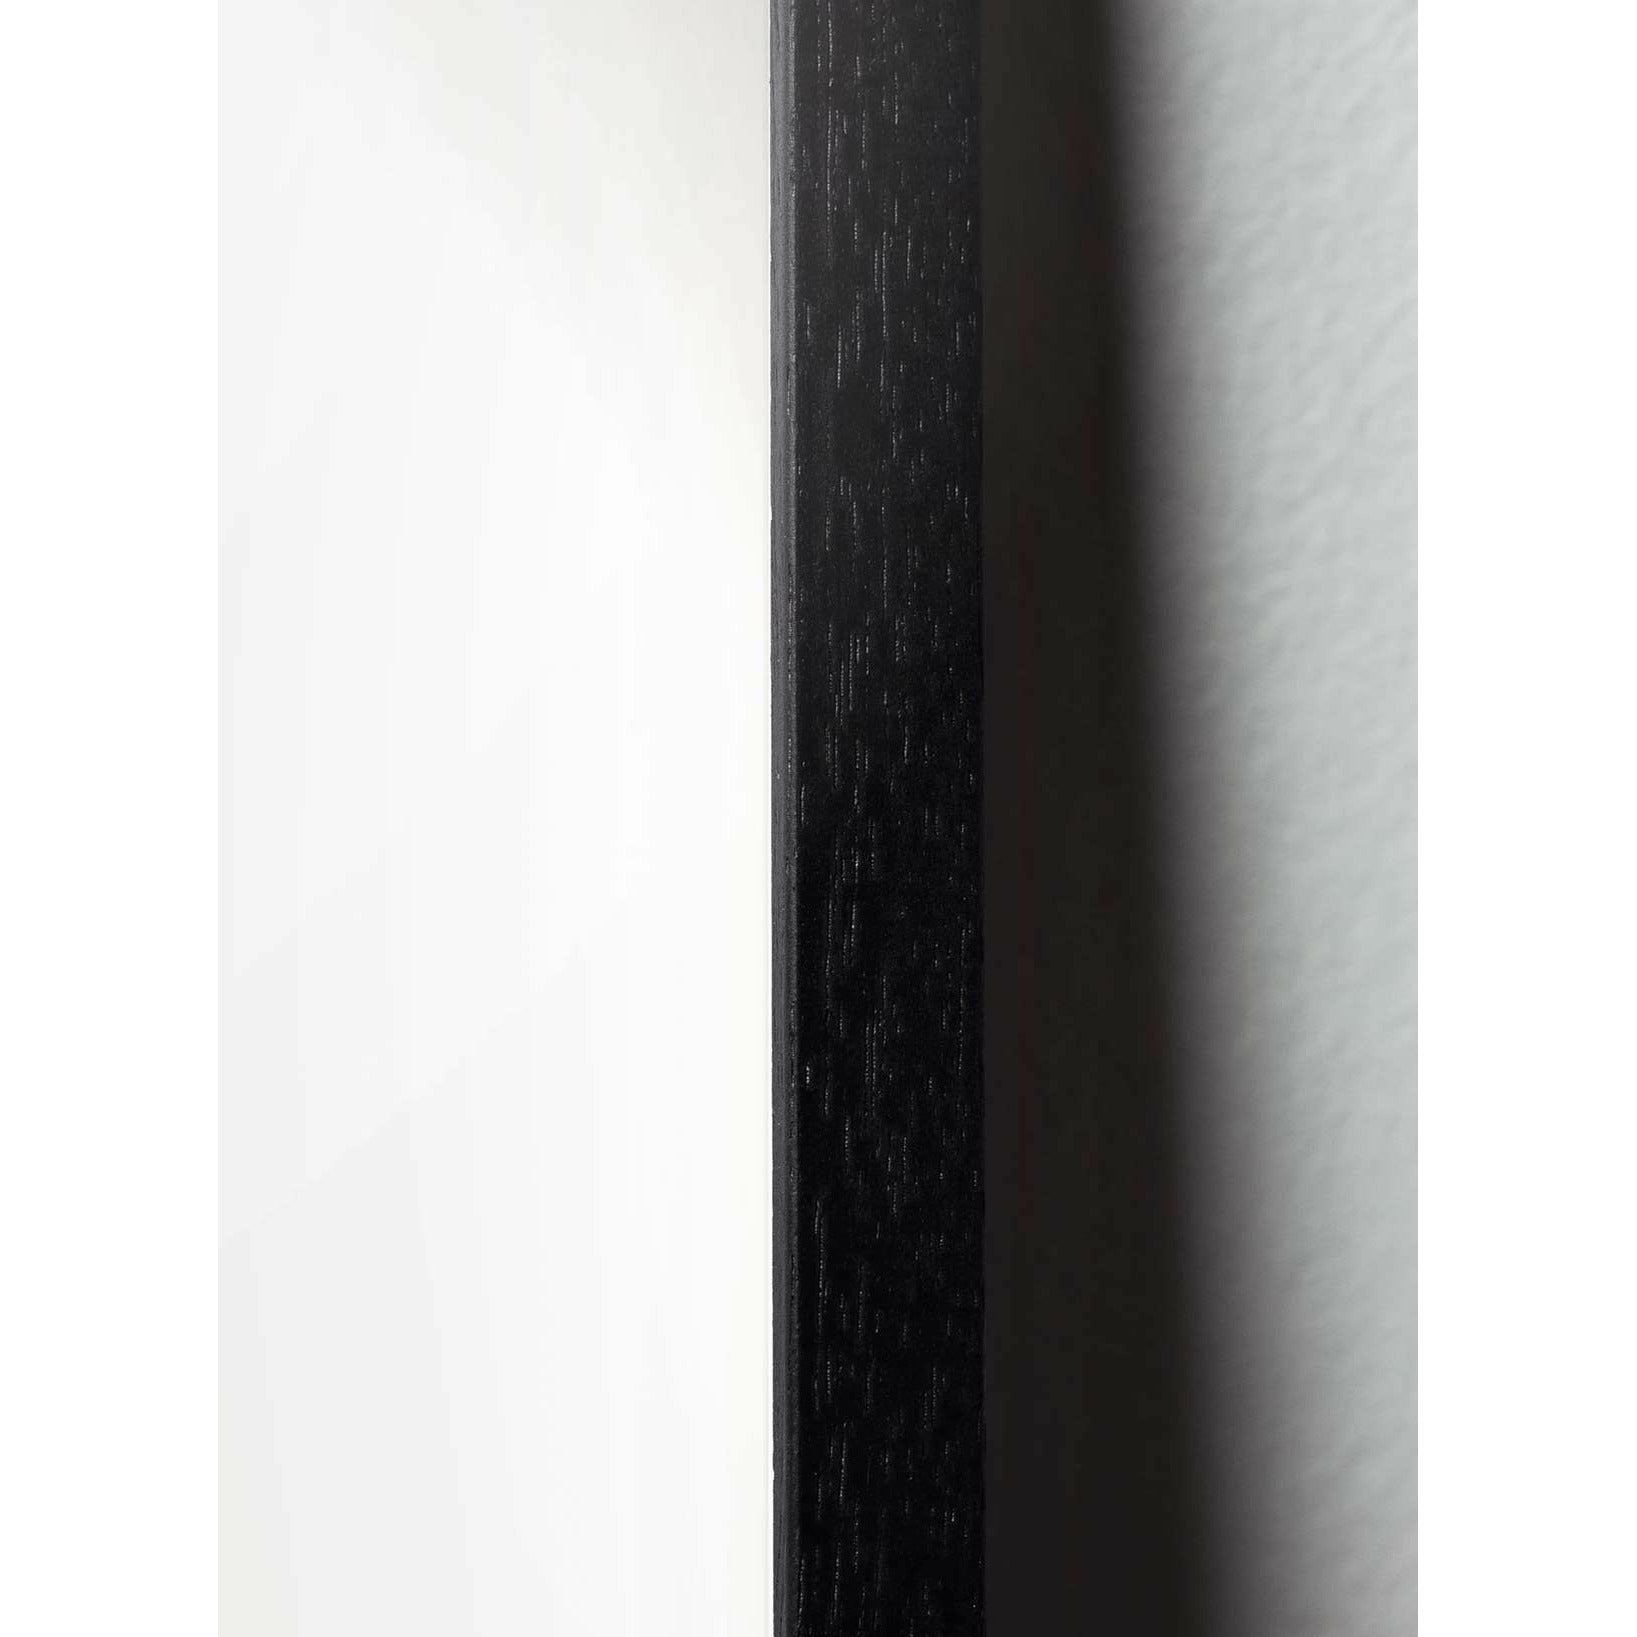 Brainchild Drop designikonplakat, ramme lavet af sort lakeret træ 70 x100 cm, lilla